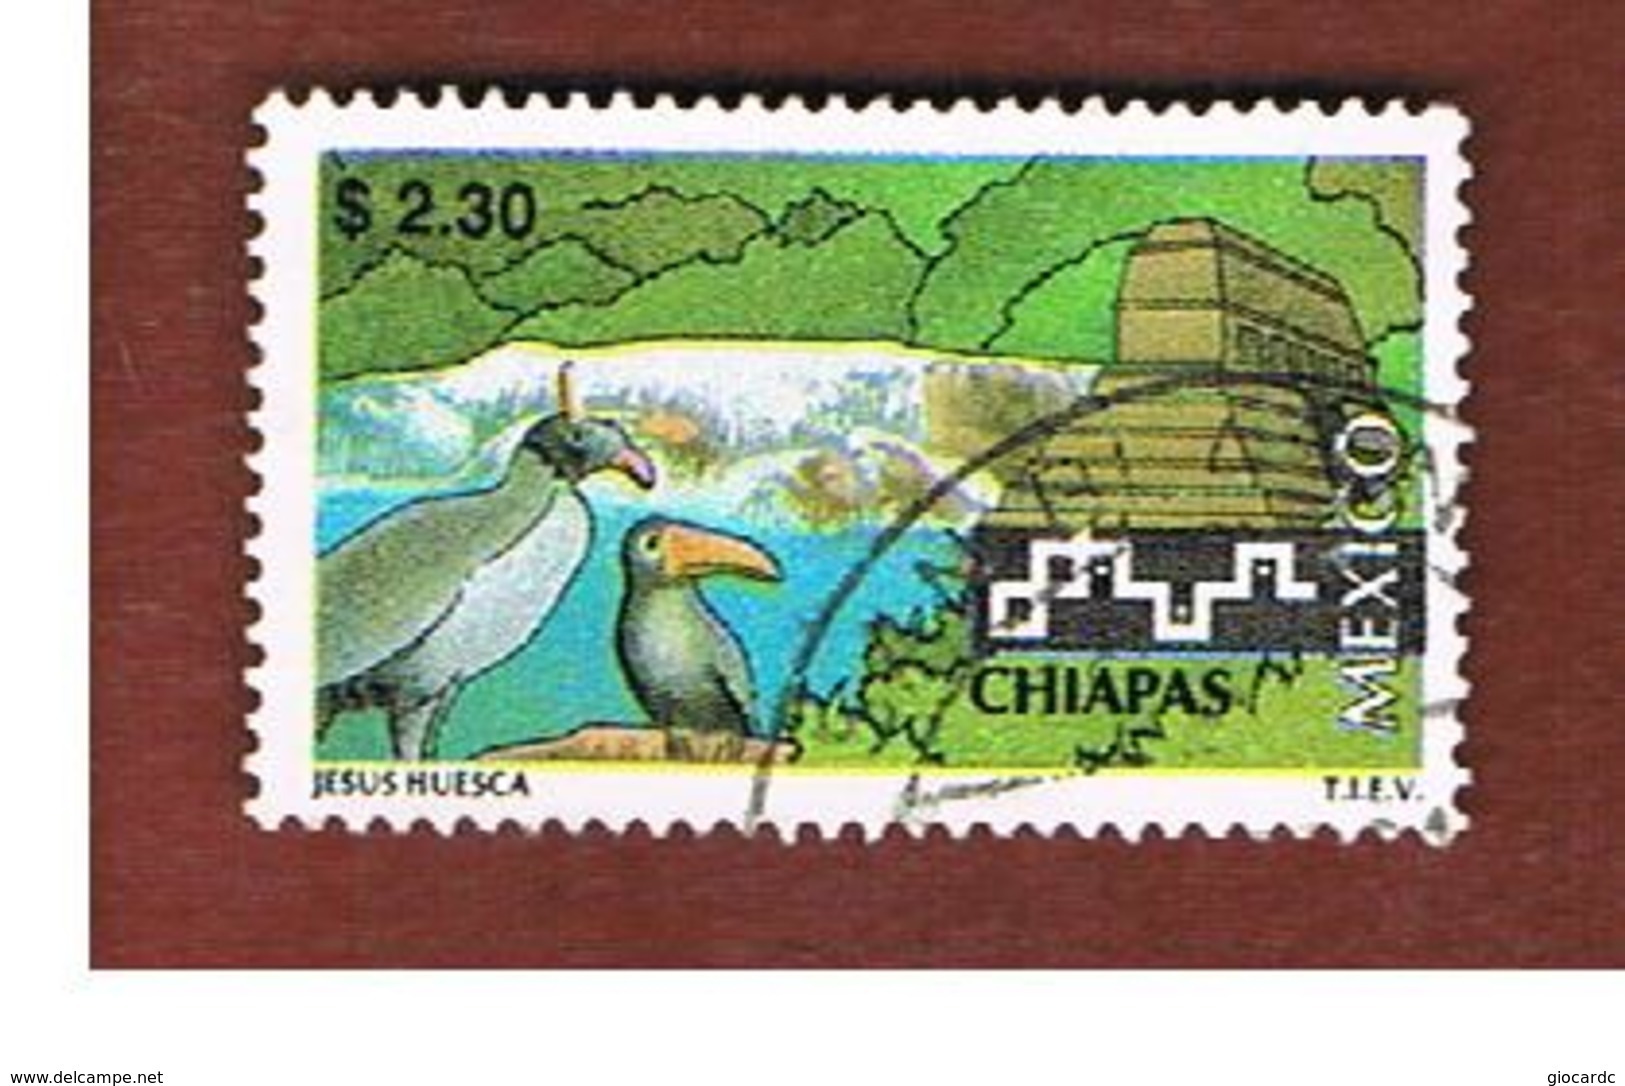 MESSICO (MEXICO) -  SG 2414  - 1997  TOURISM: CHIAPAS                        -  USED° - Messico